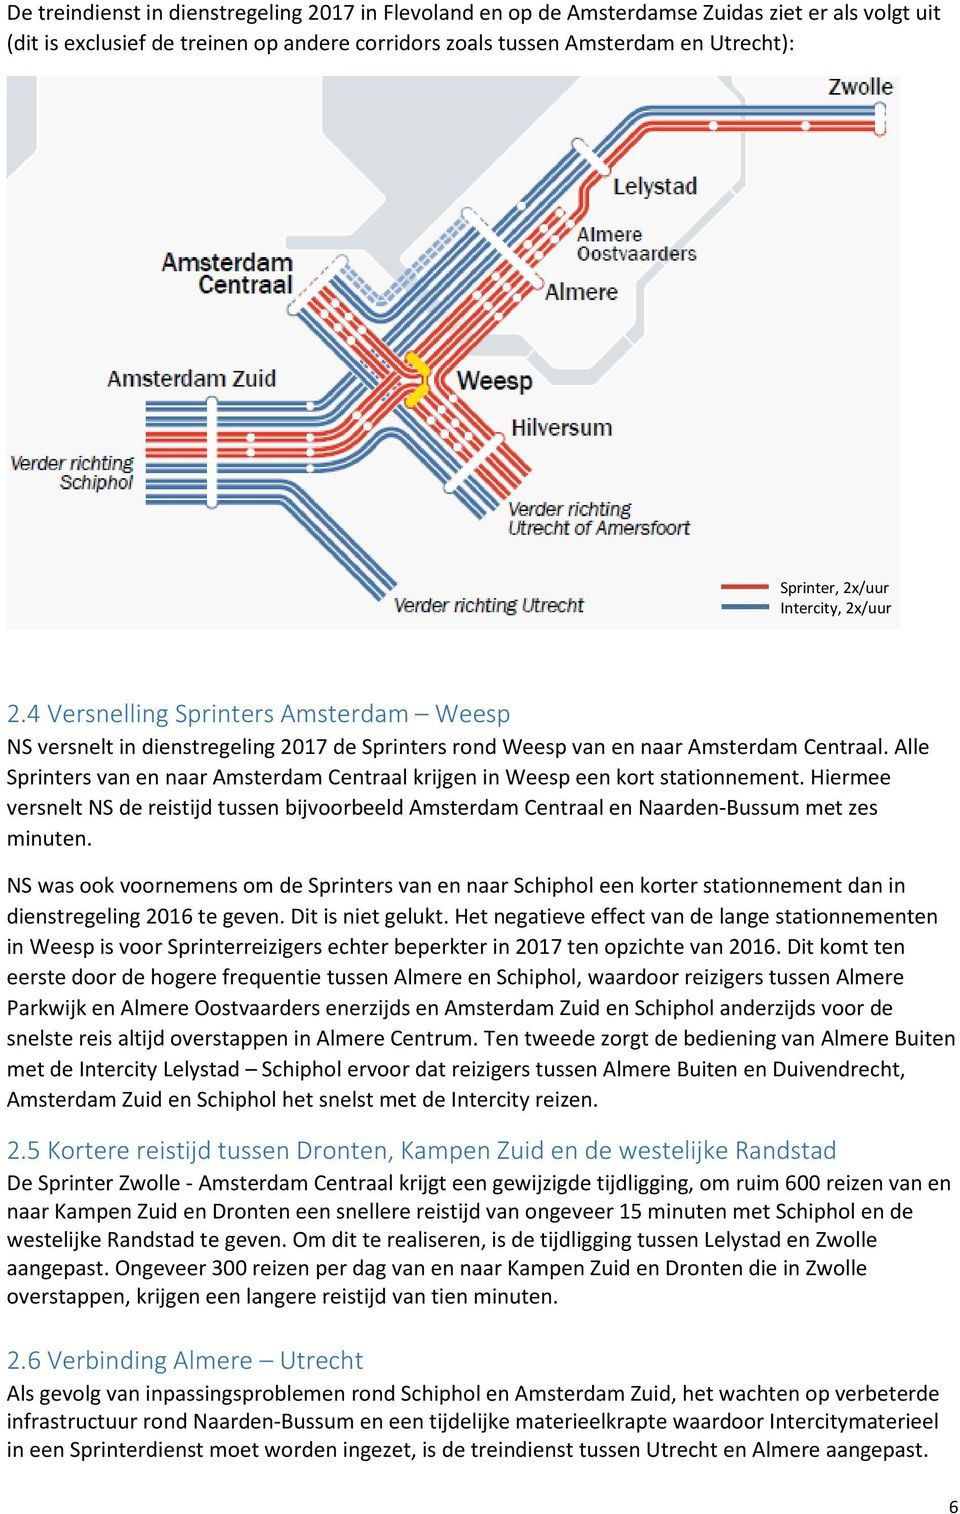 Alle Sprinters van en naar Amsterdam Centraal krijgen in Weesp een kort stationnement. Hiermee versnelt NS de reistijd tussen bijvoorbeeld Amsterdam Centraal en Naarden-Bussum met zes minuten.